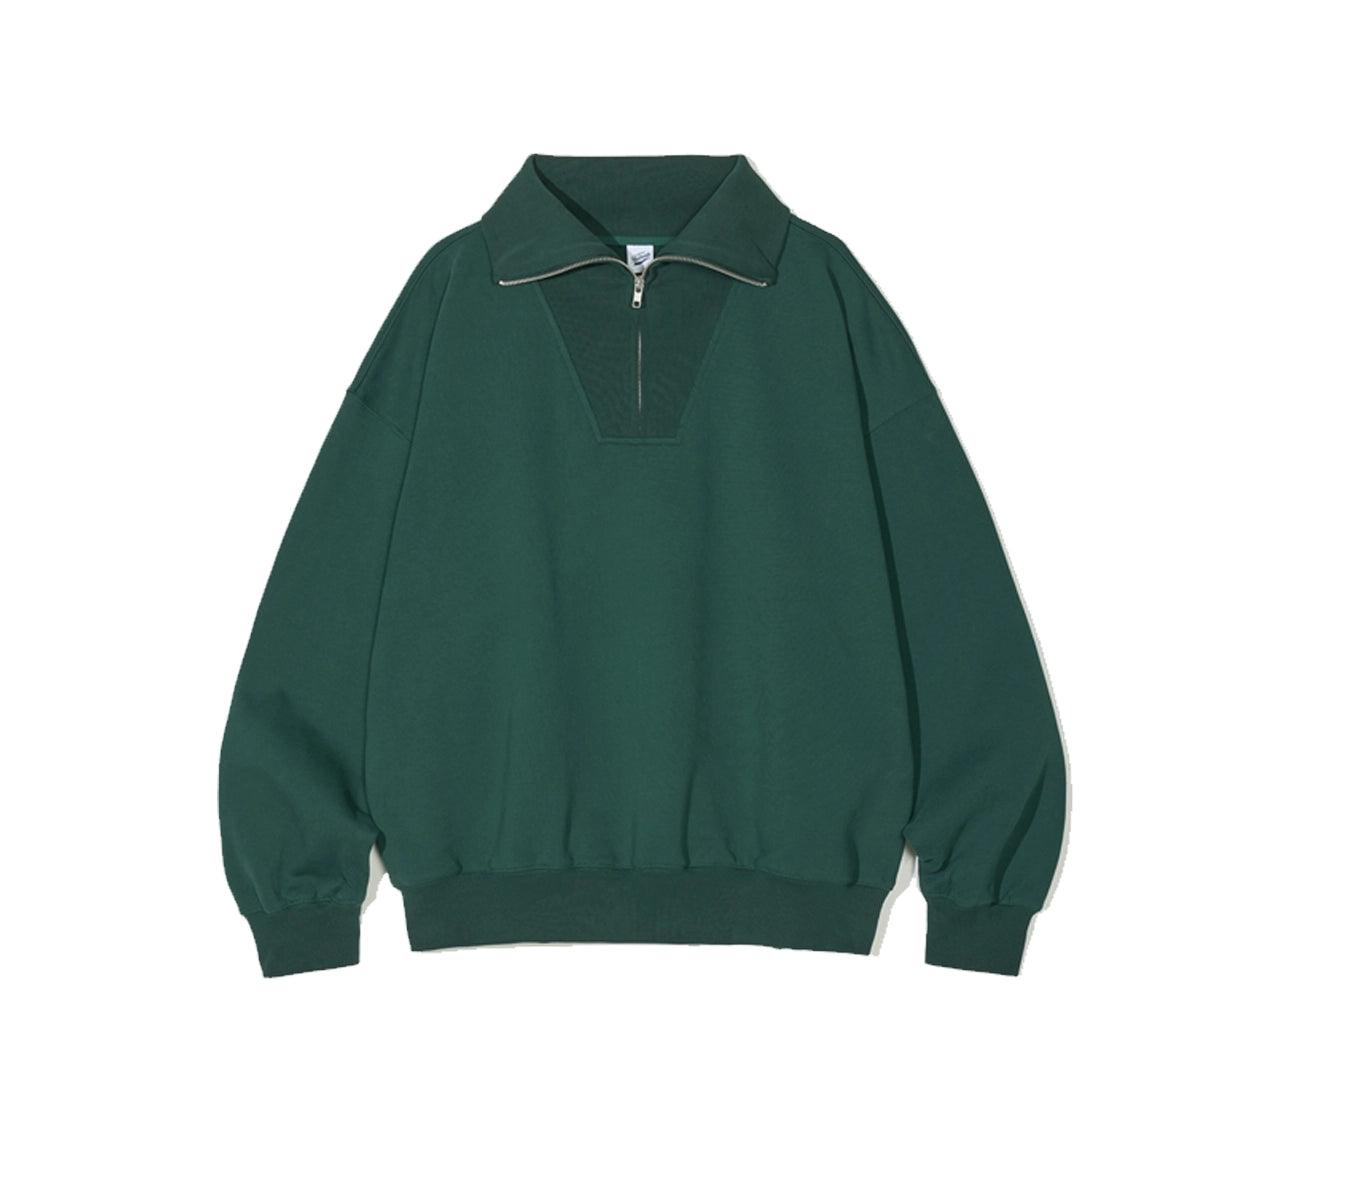 Partimento Collar Zip-up Pullover Sweatshirt - Green -